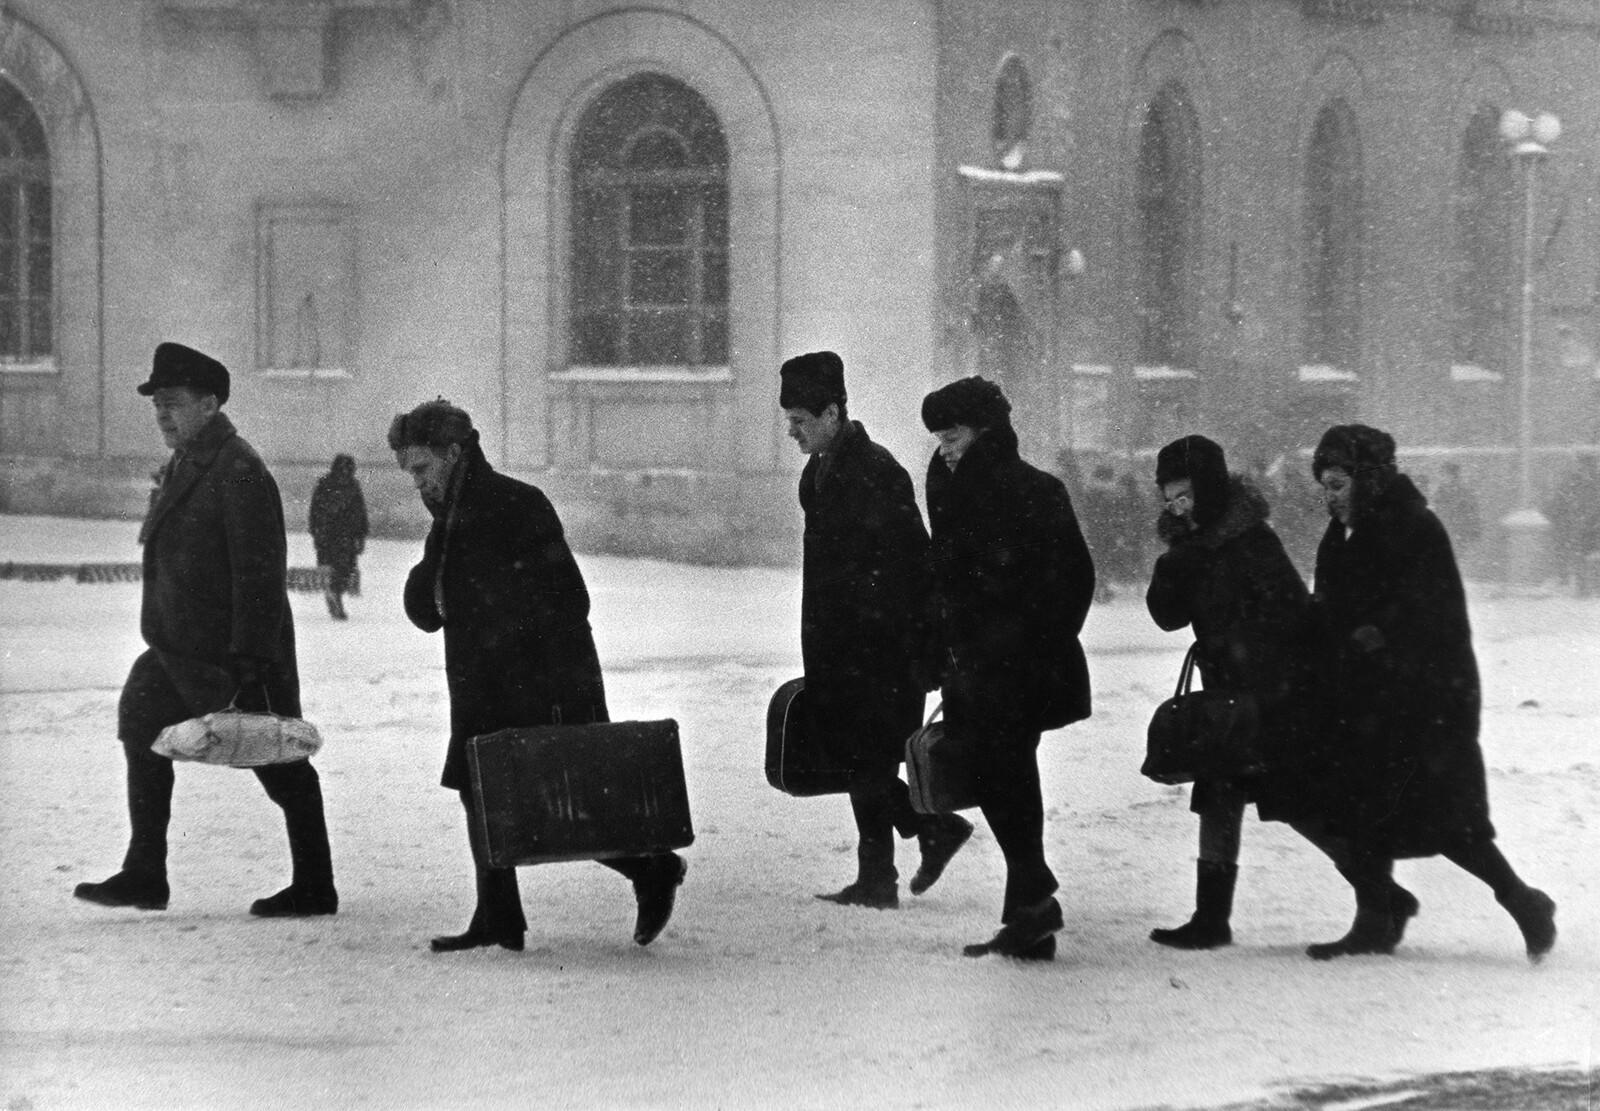 Зимнее утро из серии Норильск, 1965. Фотограф Всеволод Тарасевич